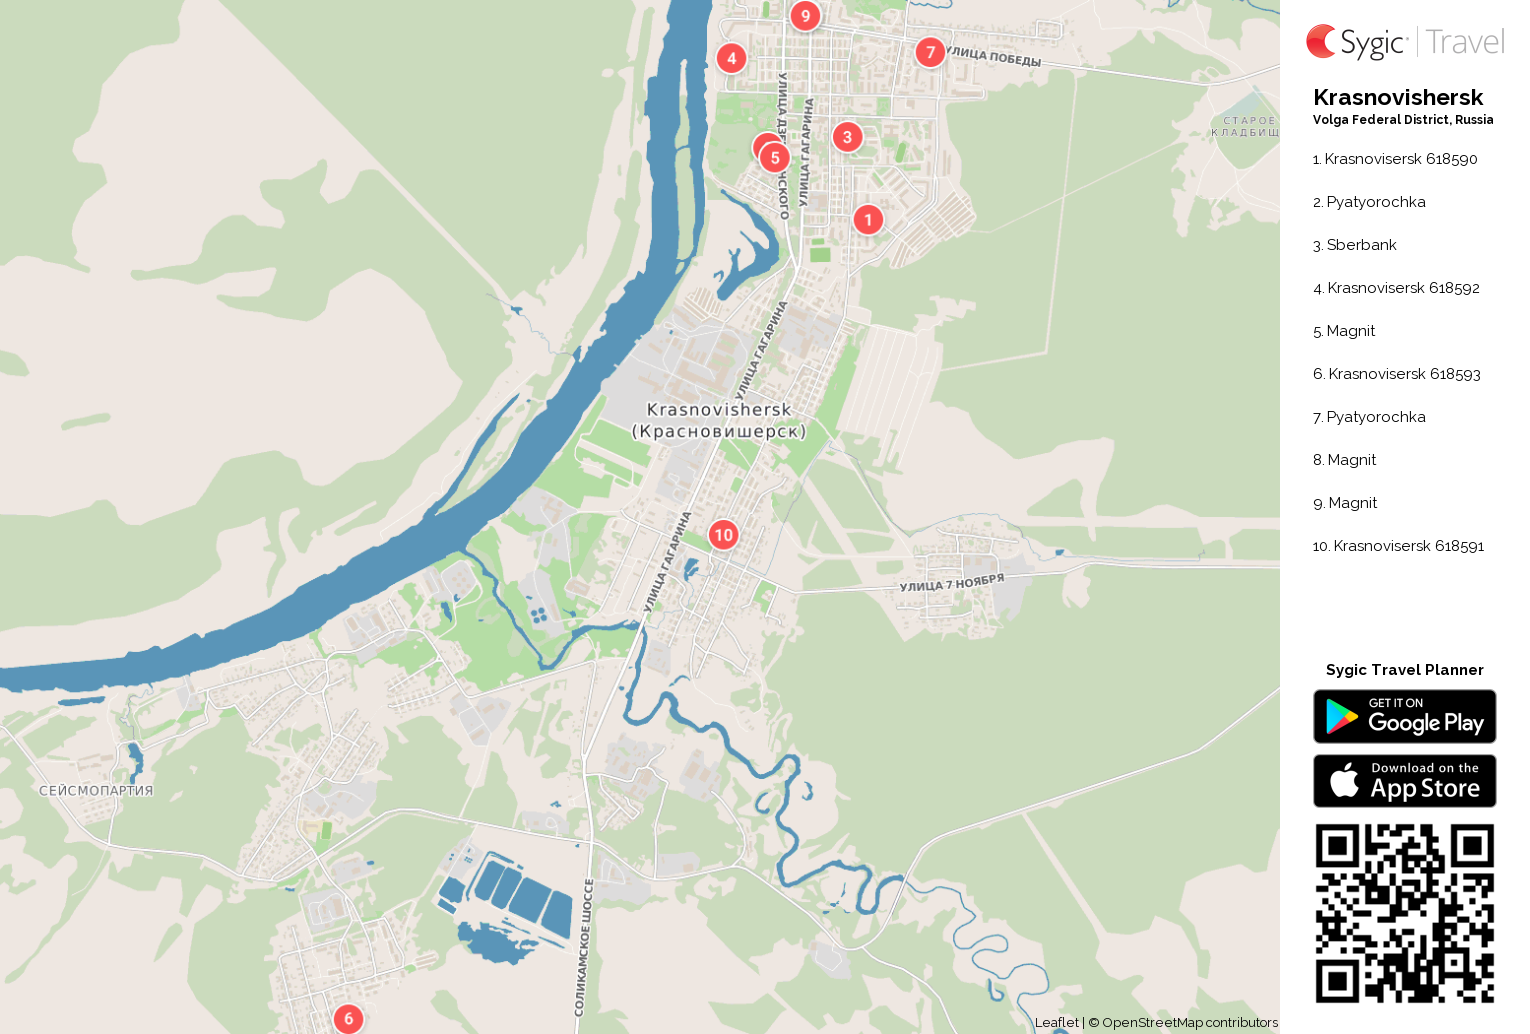 krasnovishersk-printable-tourist-map